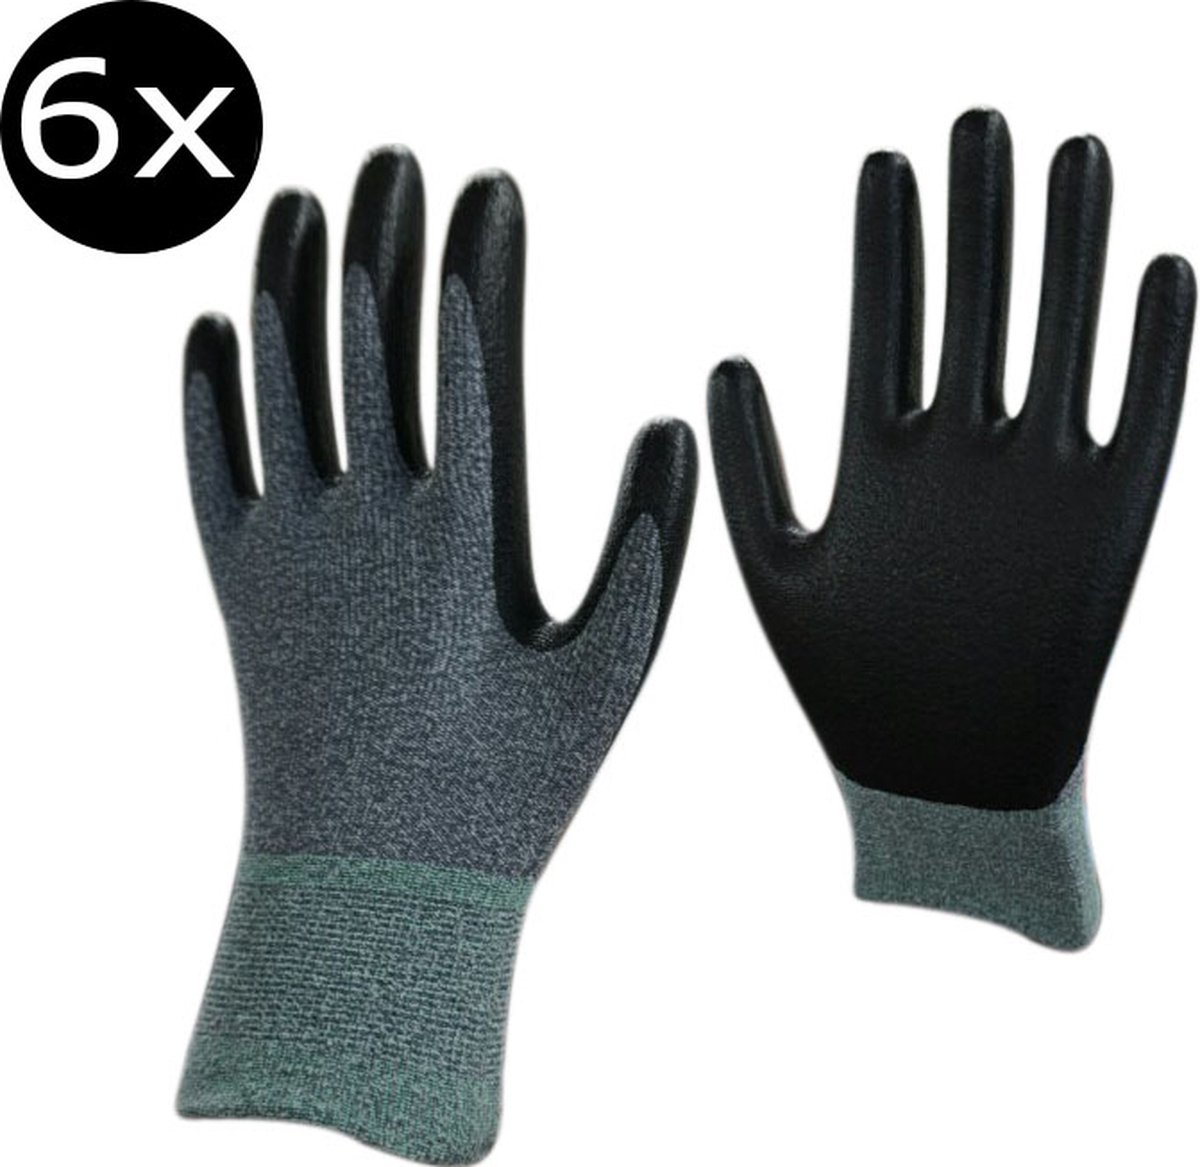 DUKWON Werkhandschoenen_6 paar_ 3295SP - Multifunction Working Gloves - NBR Foam Palm Coating Finished -Made in Korea - M/L/XL